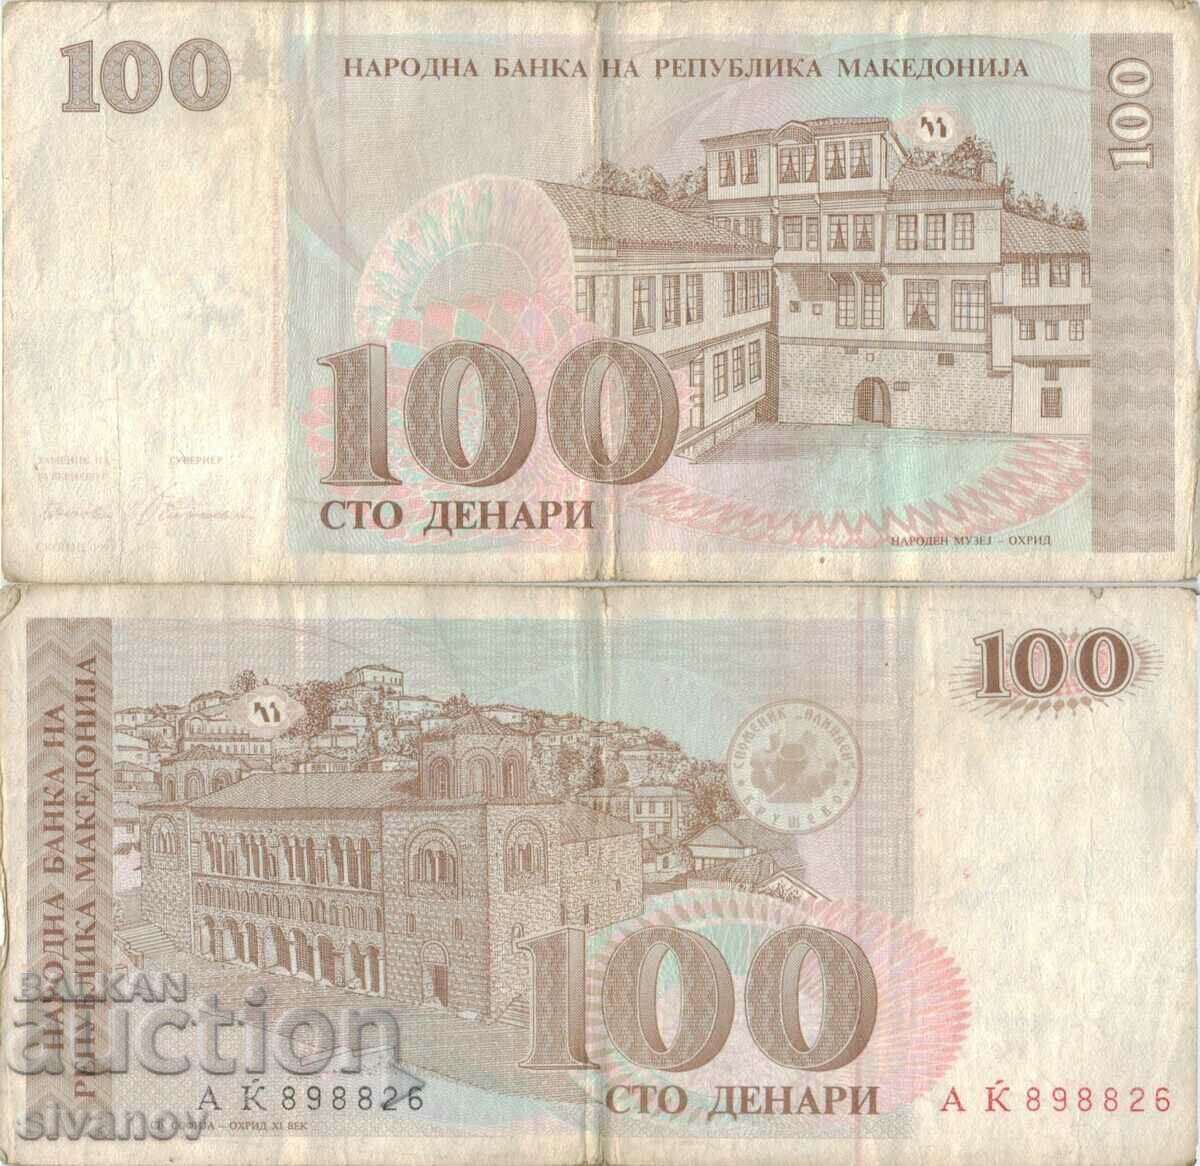 Macedonia 100 denari 1993 bancnota #5223